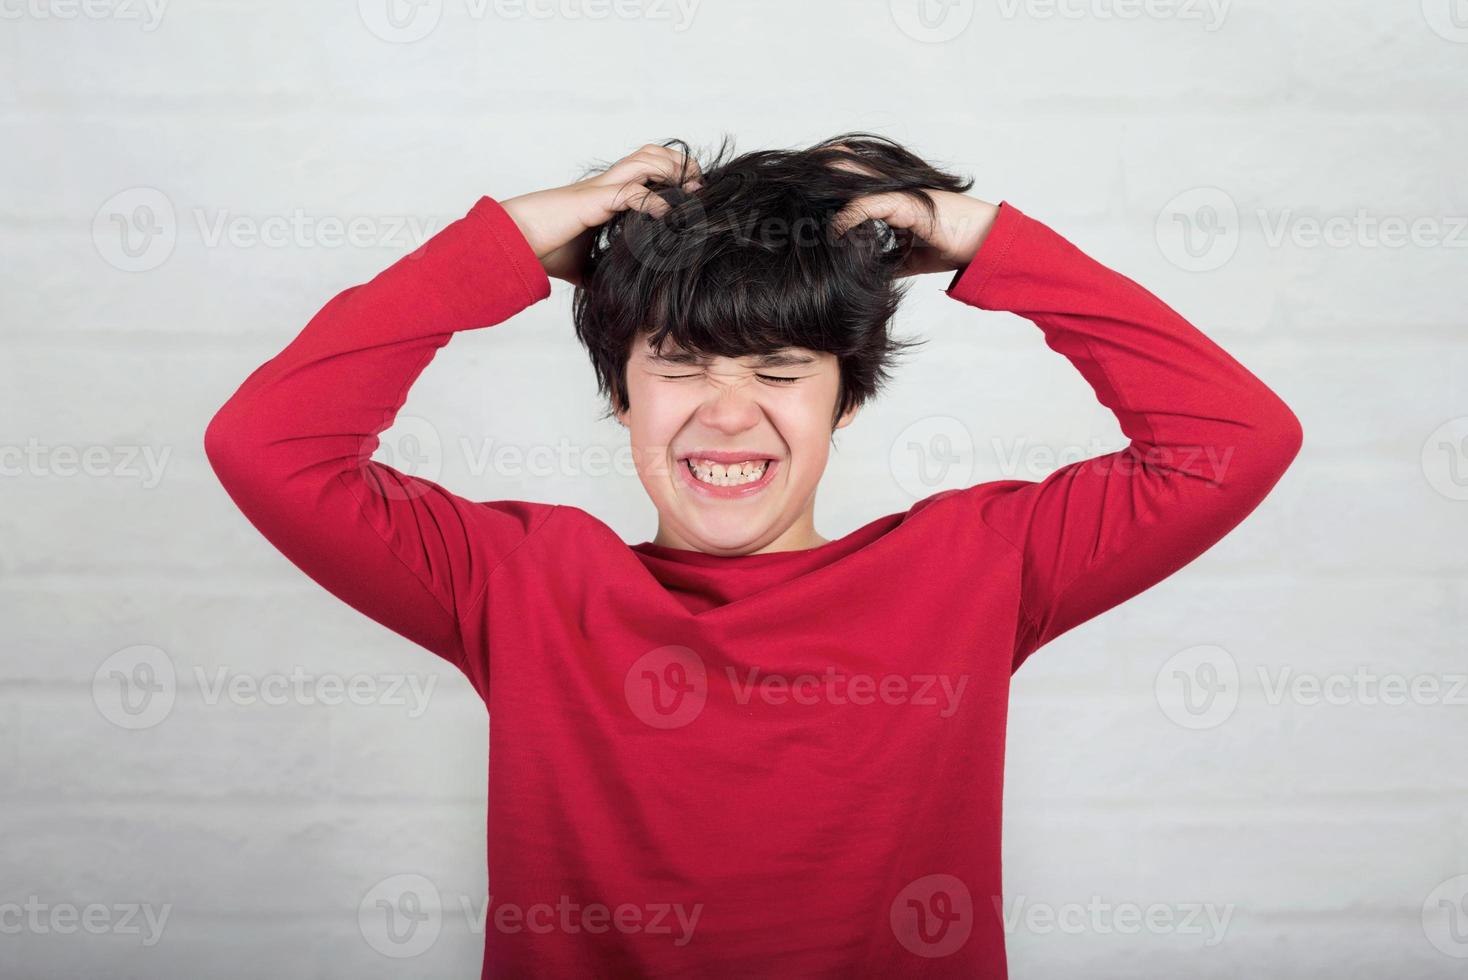 pojke kliar sig i håret efter huvudlöss foto